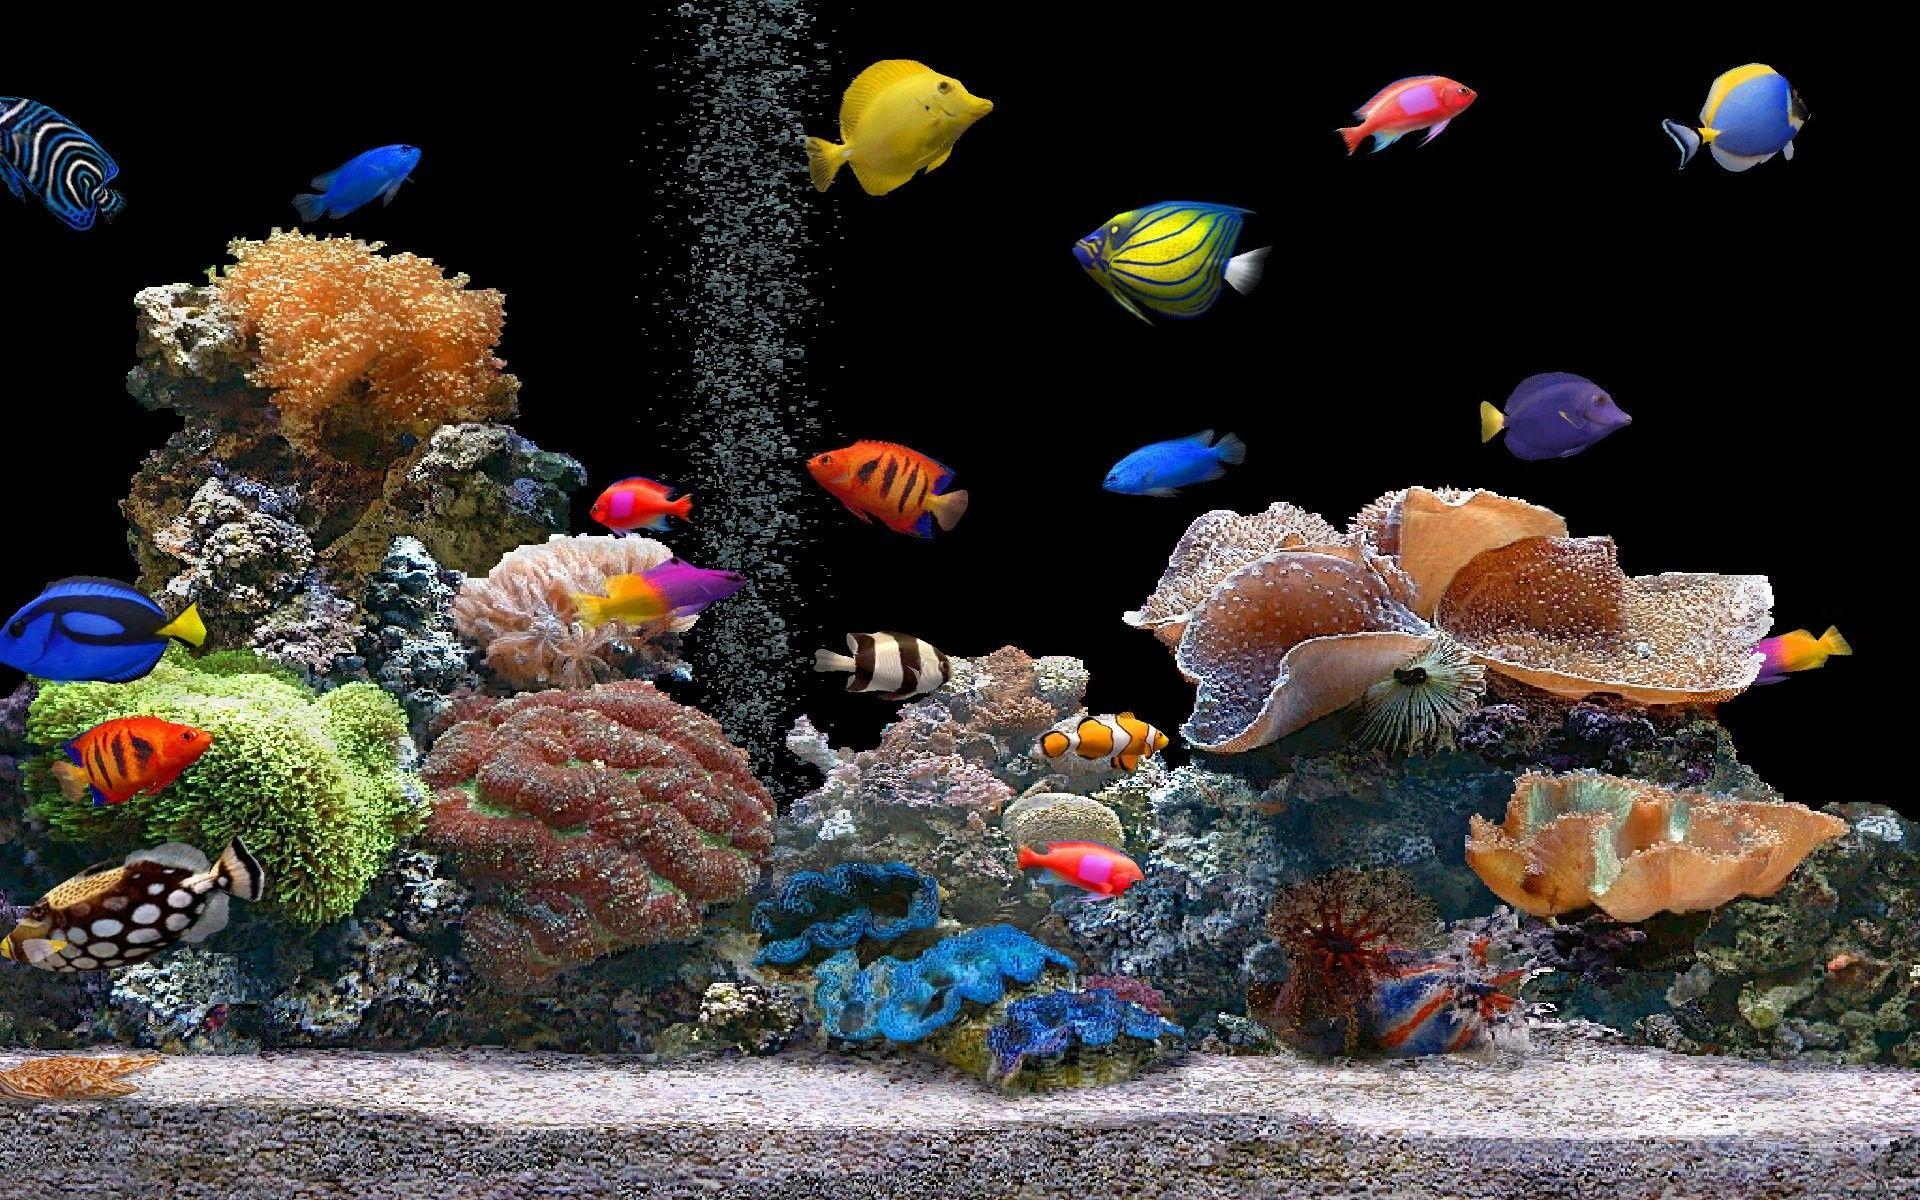 Bạn đang tìm kiếm hình nền hồ cá nước mặn miễn phí? Chúc mừng! Bức ảnh này sẽ làm bạn hài lòng với những hình ảnh đầy màu sắc và đẹp mắt của các loài cá nước mặn. Sử dụng hình ảnh này sẽ cho bạn không gian làm việc tươi mới và thú vị hơn bao giờ hết!